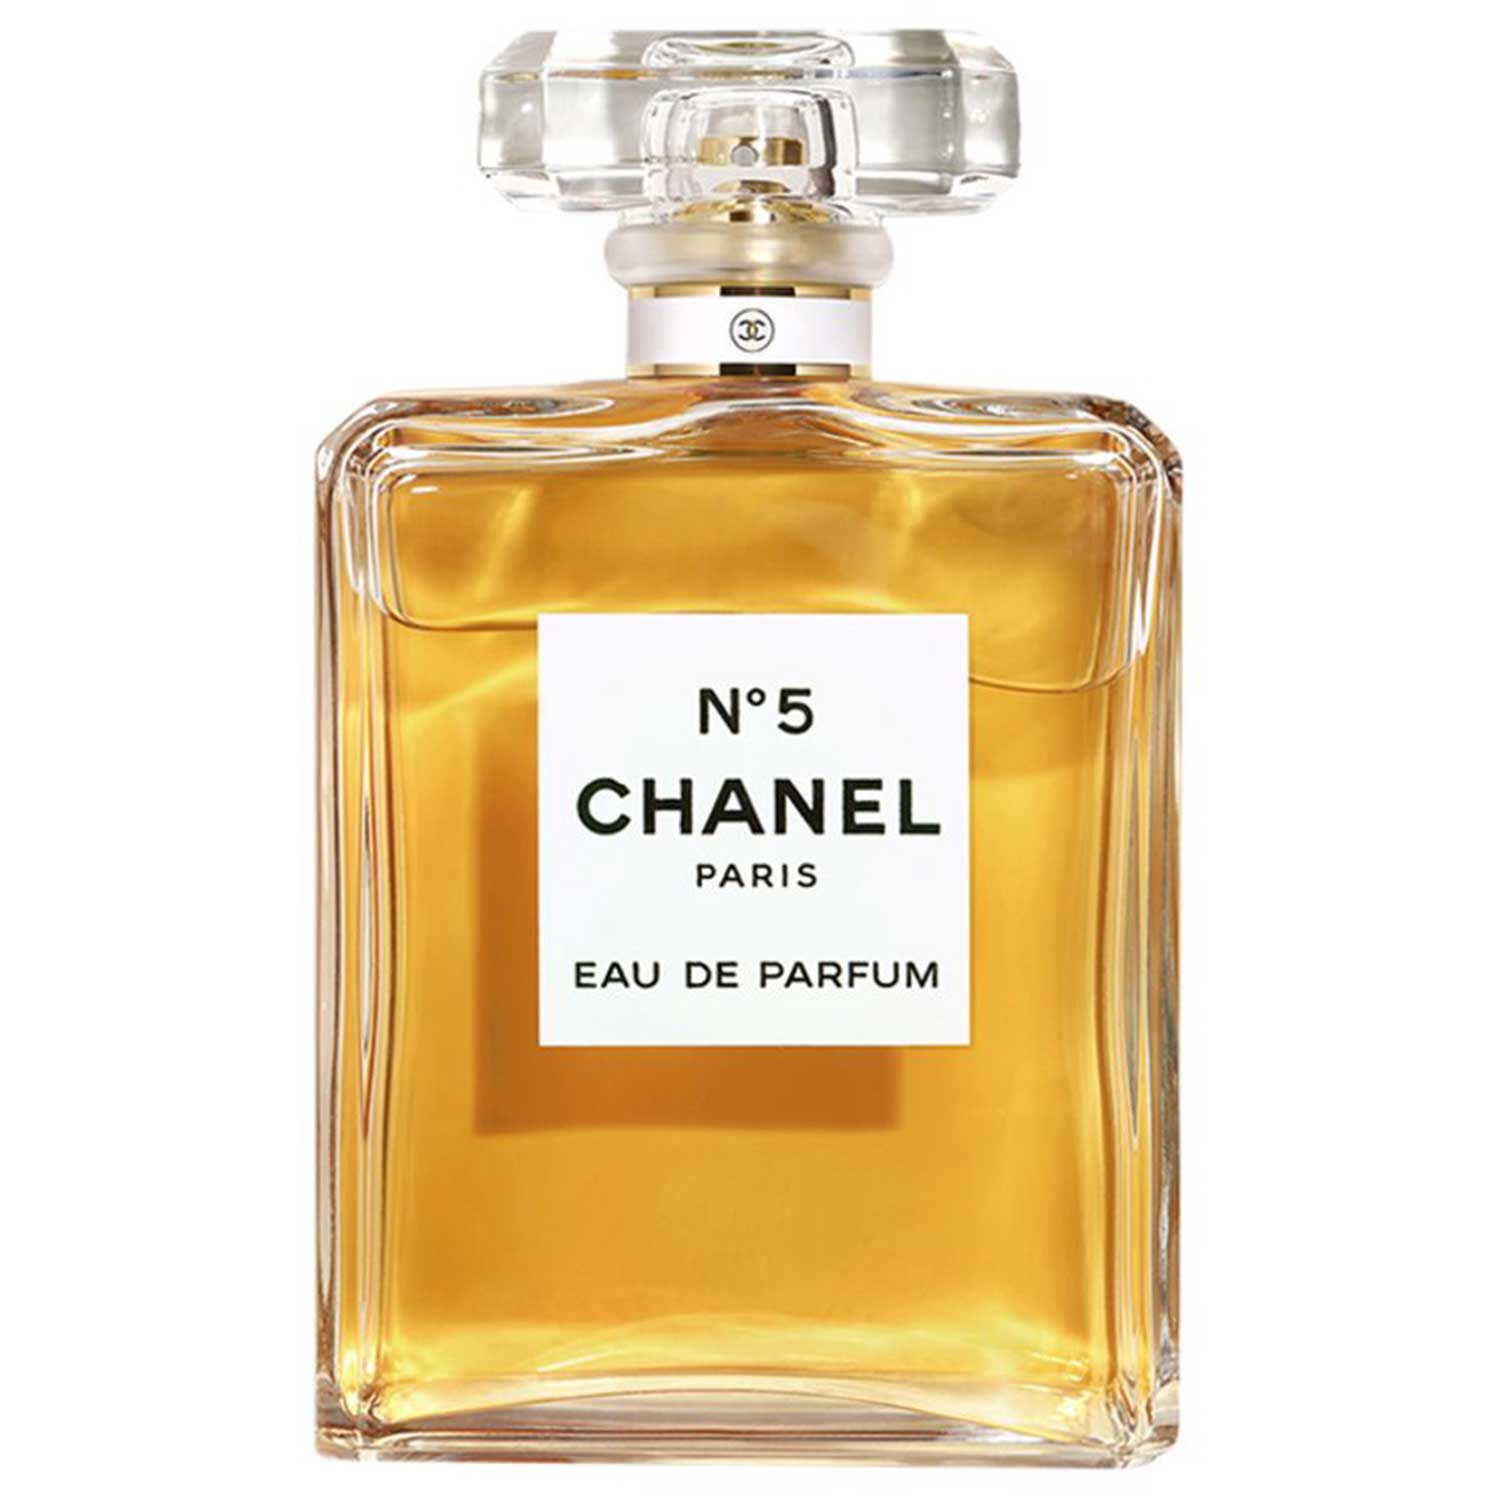 Chanel No. 5 Eau de Parfum 200 ml